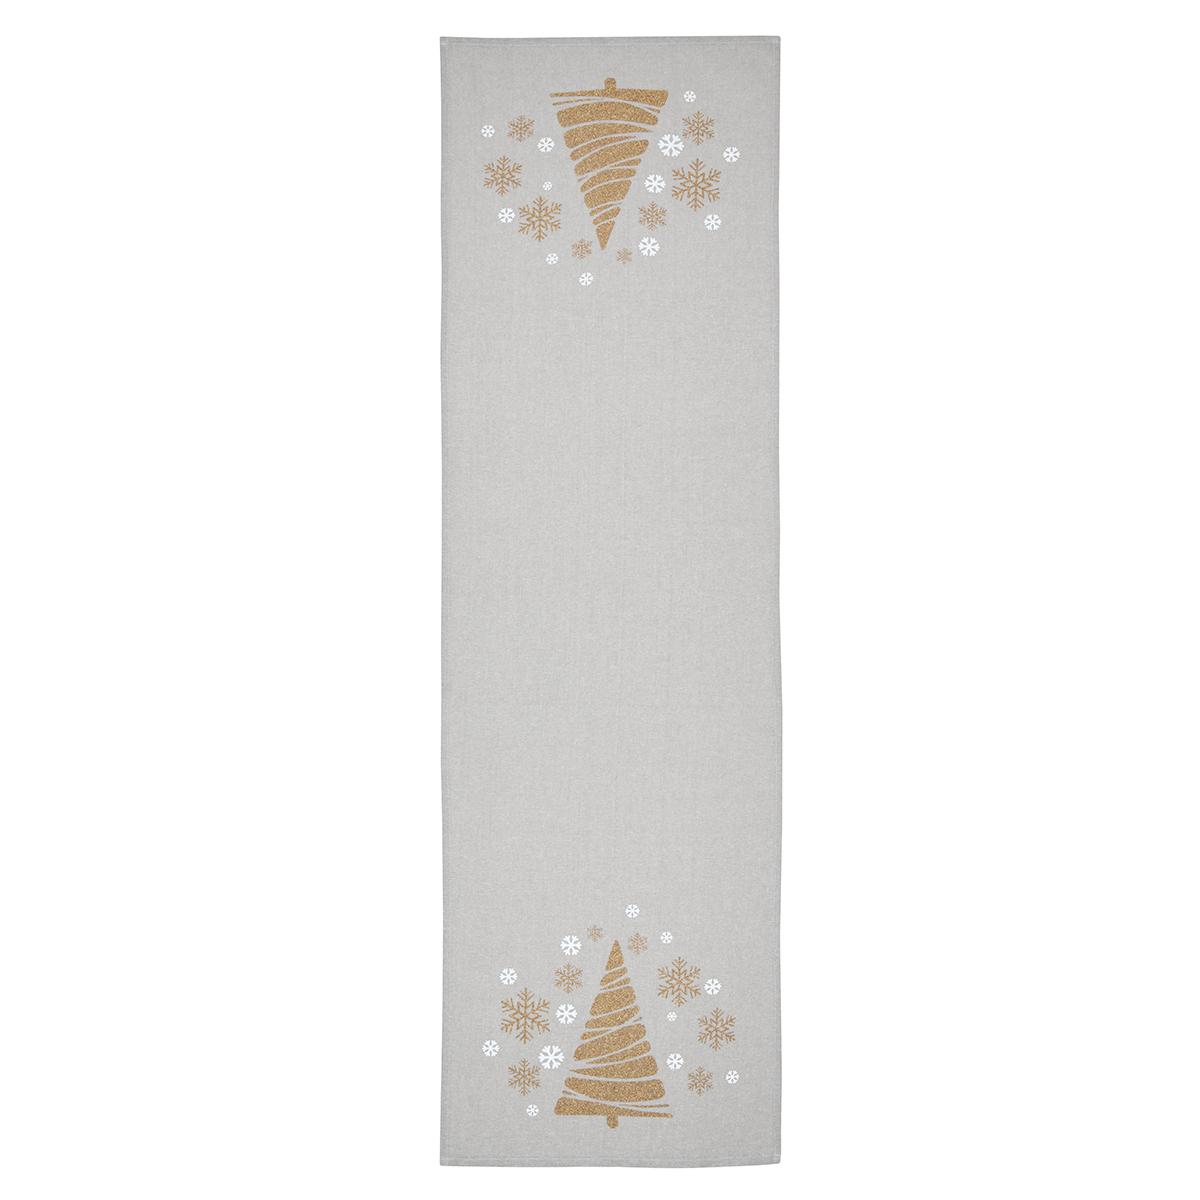 Χριστουγεννιάτικη Τραβέρσα (45×150) S-F Siberie Or N3C763001